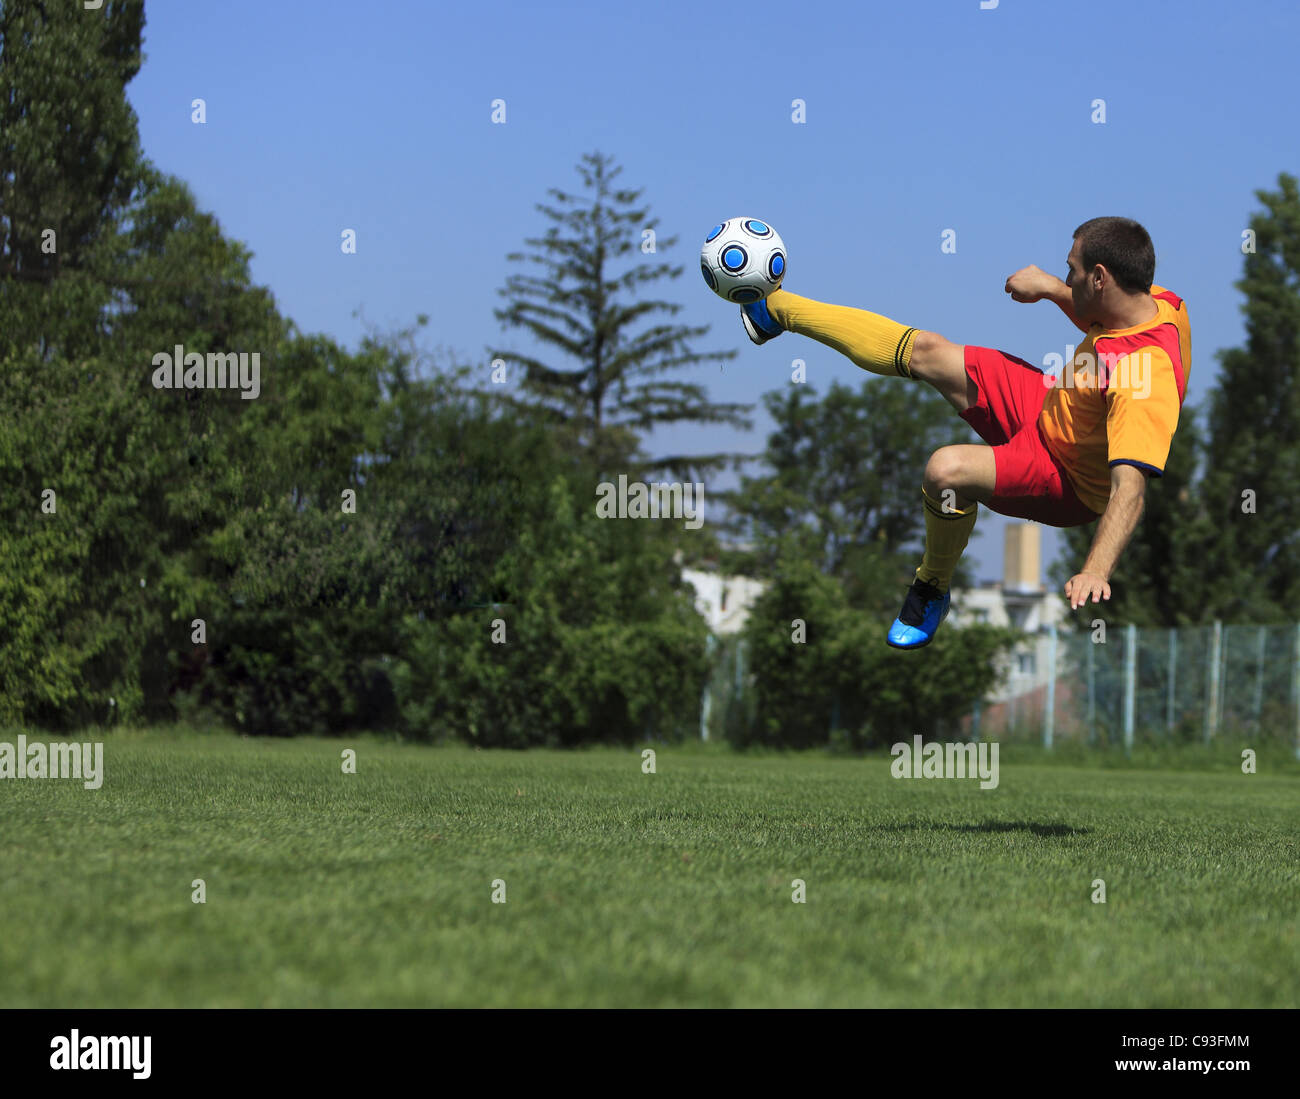 Un joueur de soccer coups la balle dans une position acrobatique. Banque D'Images